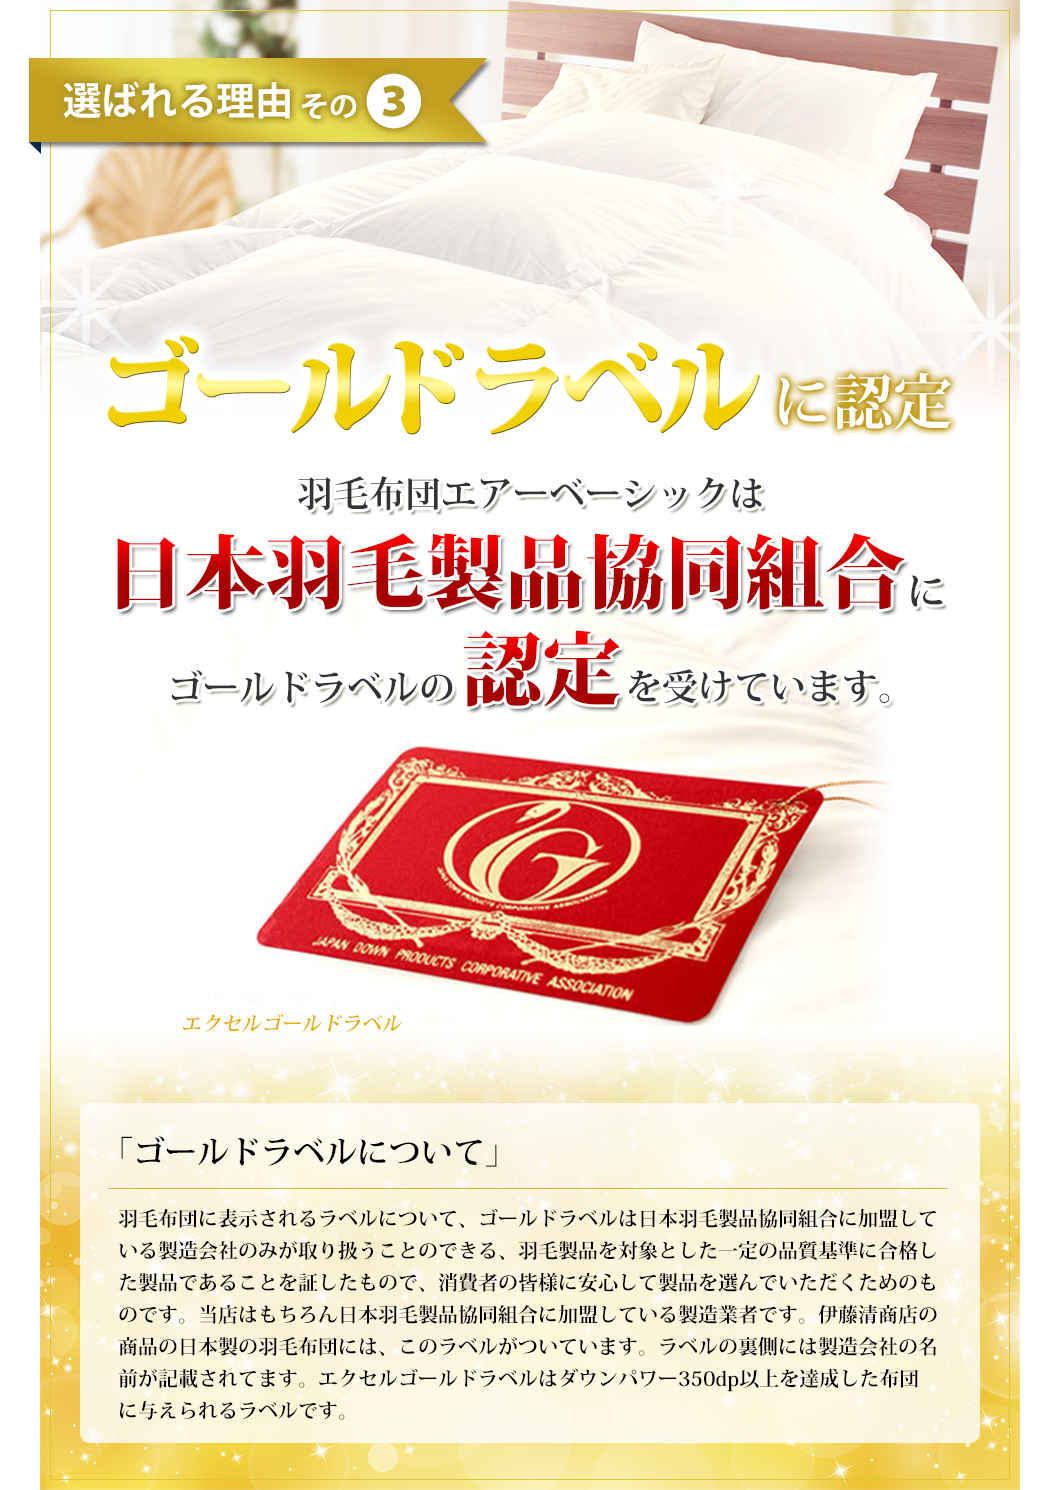 選ばれる理由その3　羽毛布団エアーベーシックはエクセルゴールドラベル認定を受けた商品です。日本羽毛製品共同組合に正式にエクセルゴールドラベル認定を受けています。